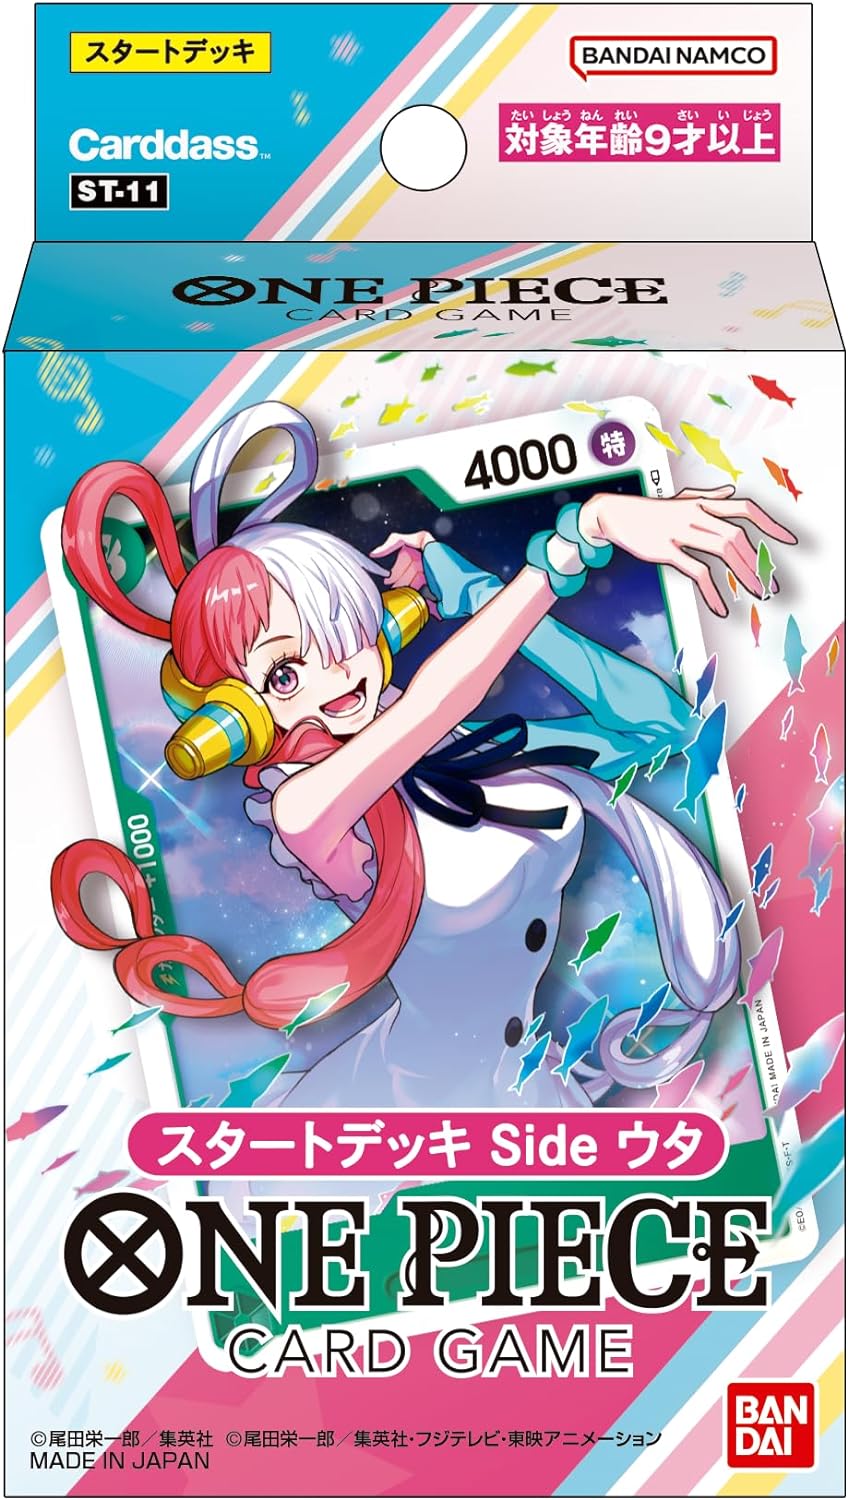 【新品】 ONE PIECE カードゲーム スタートデッキ side ウタ ST-11 倉庫S画像